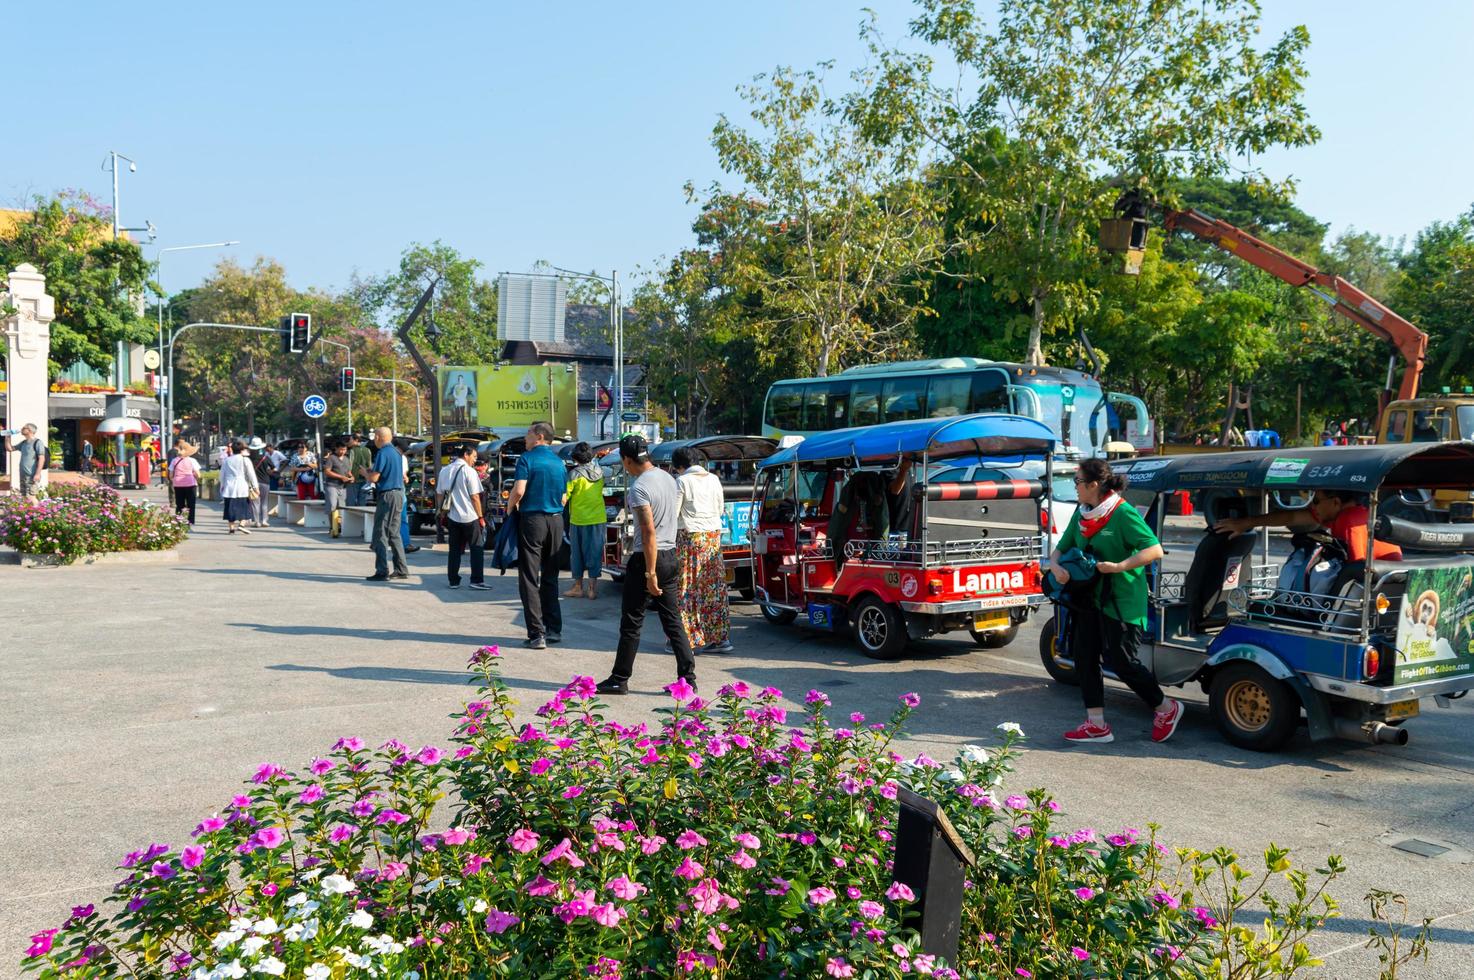 chiang mai thailand10 januari 2020een groep toeristen die een tuktuk-auto nemen, stapt uit de bus om in chiang mai te reizen. tuktuks-auto's zijn beschikbaar op veel bestemmingen in Thailand. foto